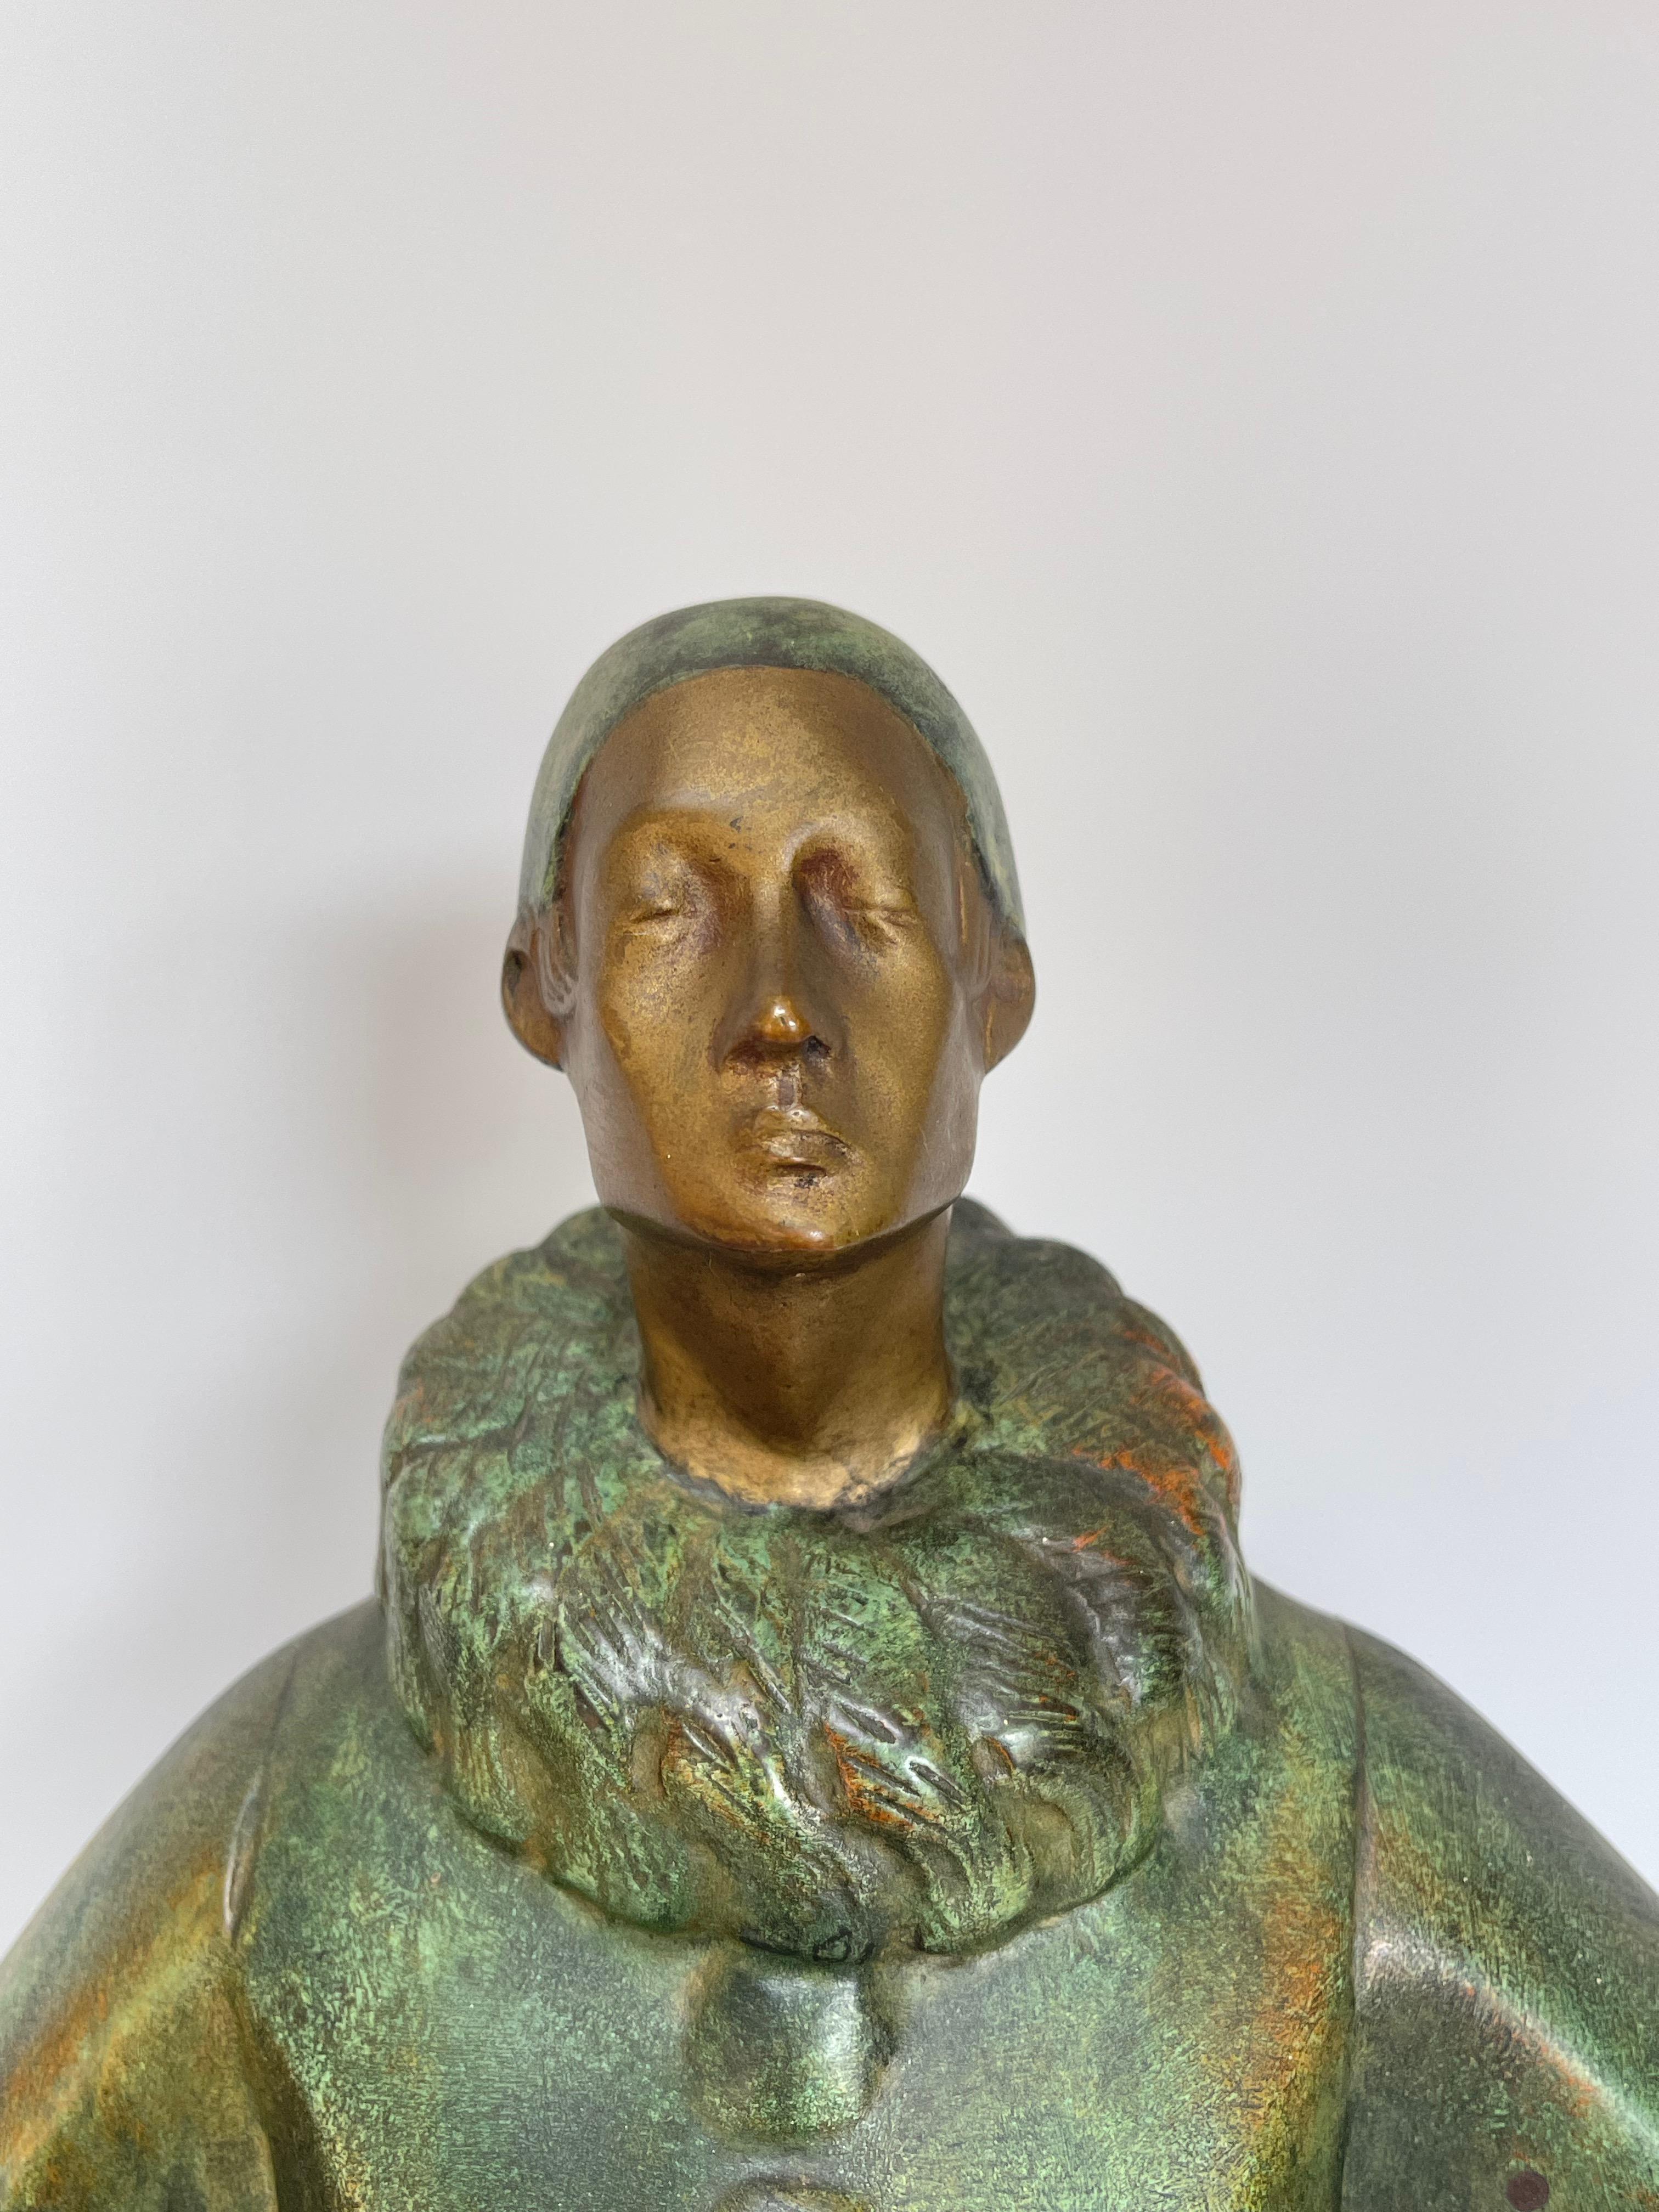 Art-déco-Bronze mit grüner und brauner Patina um 1930.
Clown aus Bronze auf Marmorsockel von Portor.
Unterzeichnet von Roland Paris auf dem Damm.
Hinweise auf Mikrokratzer auf dem Marmor.
Gesamthöhe: 53cm
Sockel: 13cm x 46,5cm
Gewicht: 16